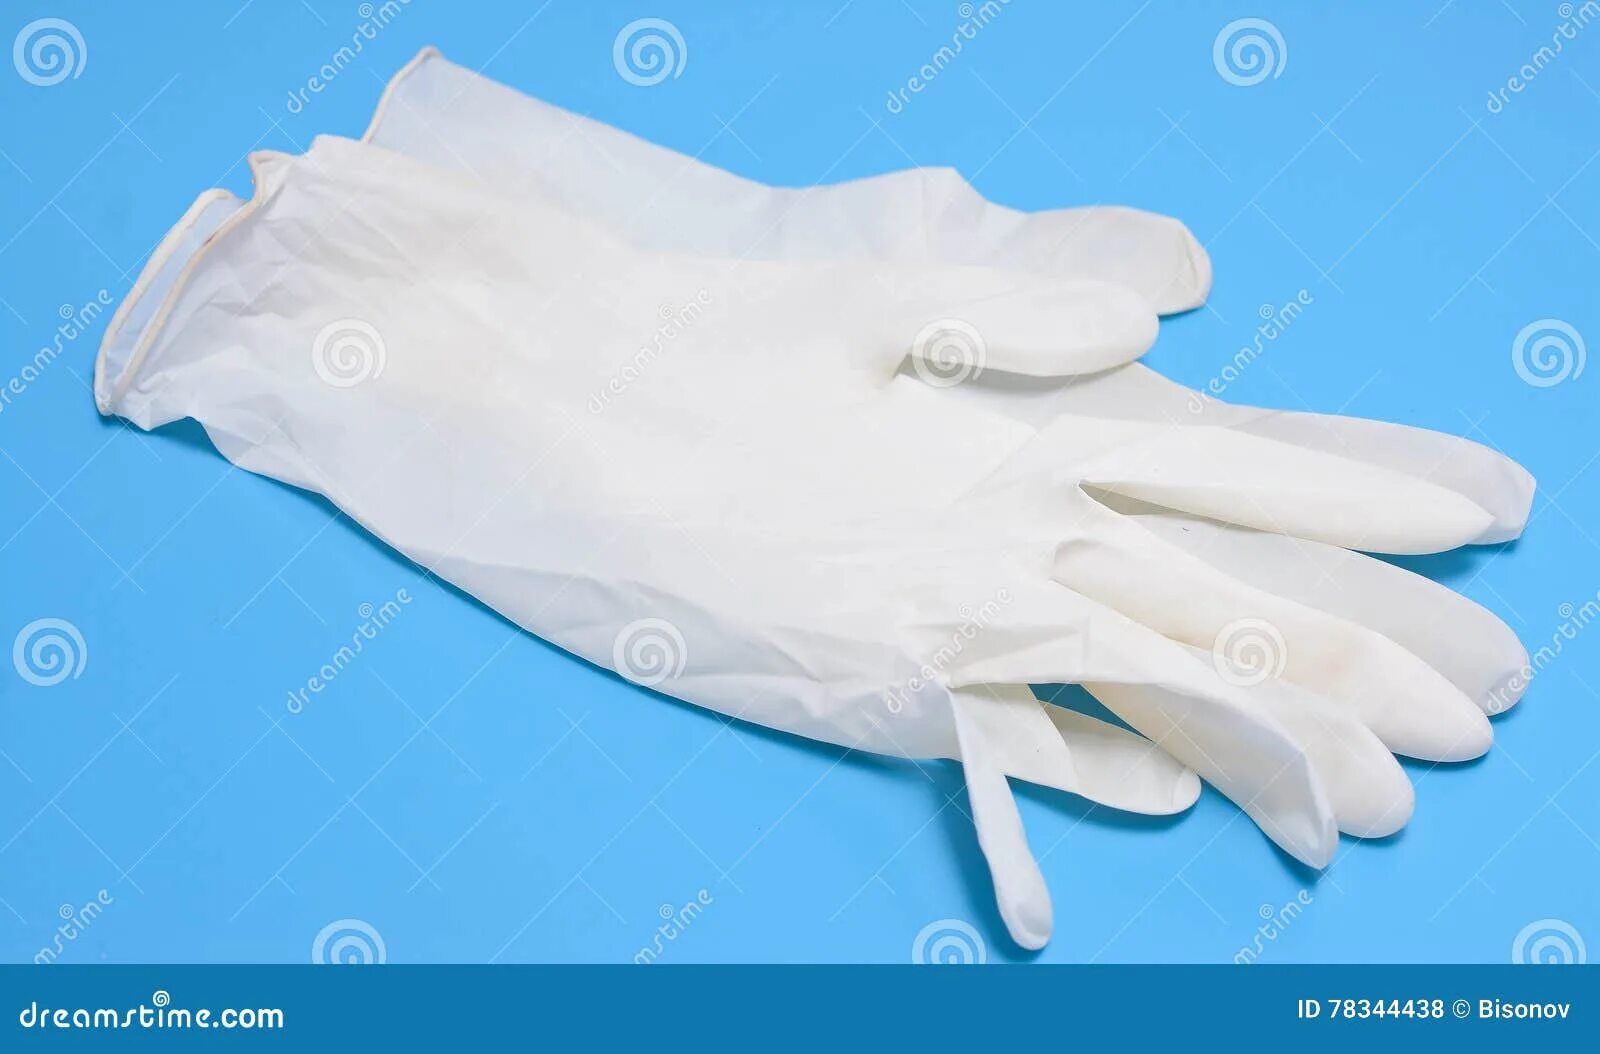 В мешке находится 29 перчаток. Перчатки медицинские белые. Медицинские перчатки лежат. Медицинские перчатки на столе. Медицинские перчатки лежат на столе.